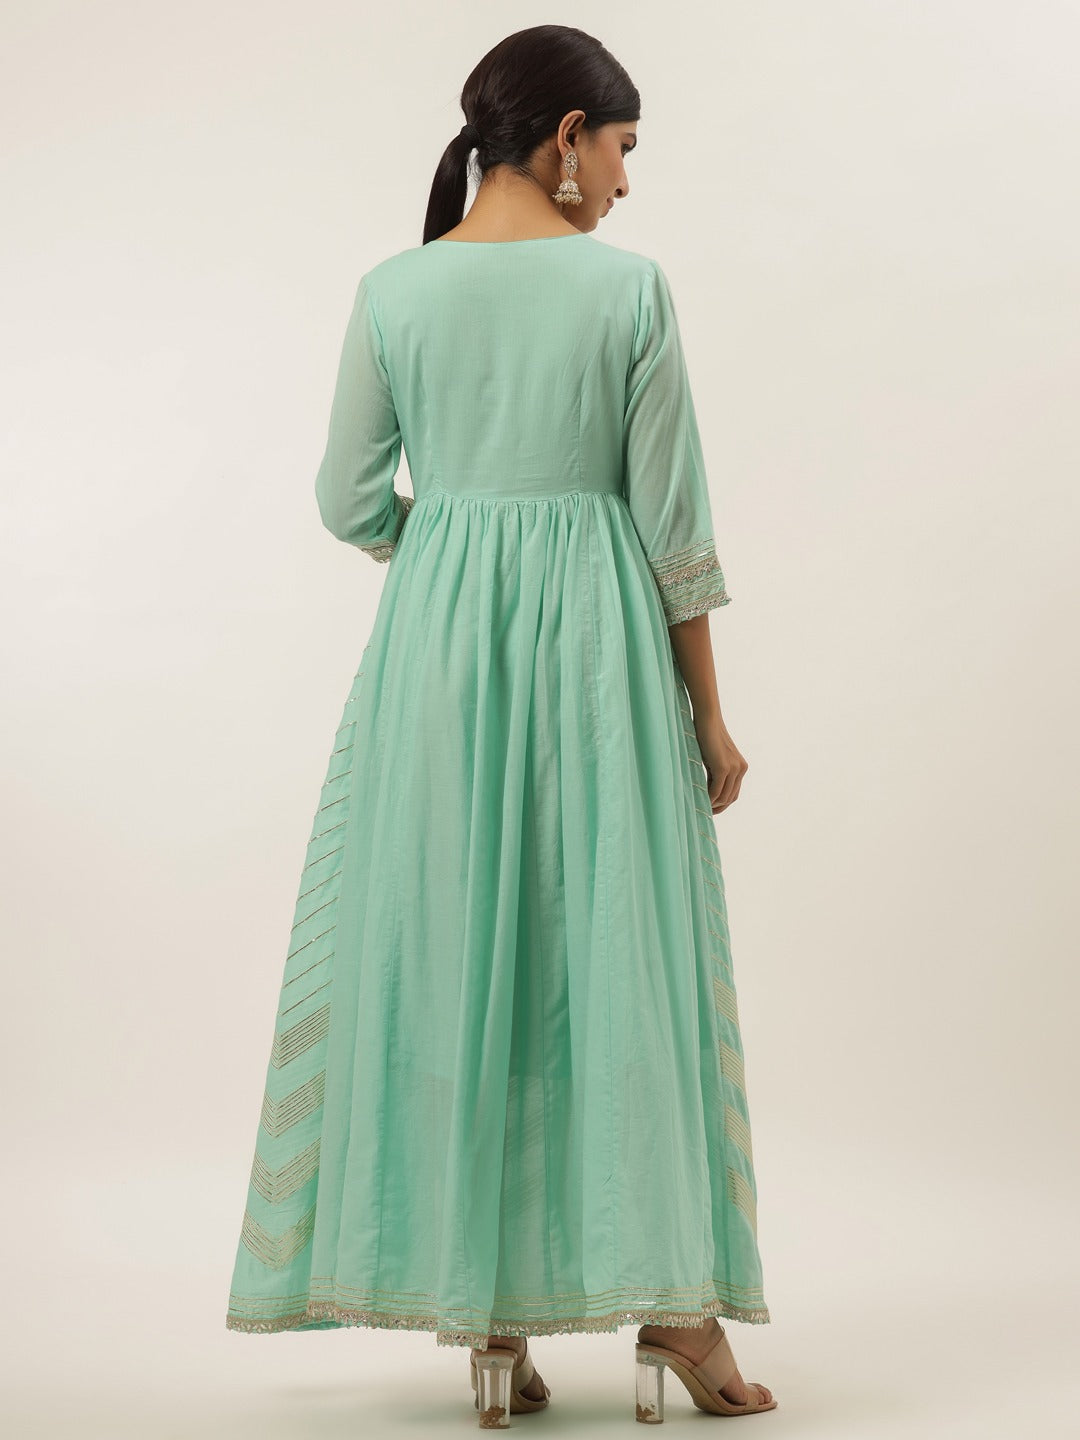 Fuchsia Geometric Print Green Maxi Dress-Yufta Store-6005DRSSBM